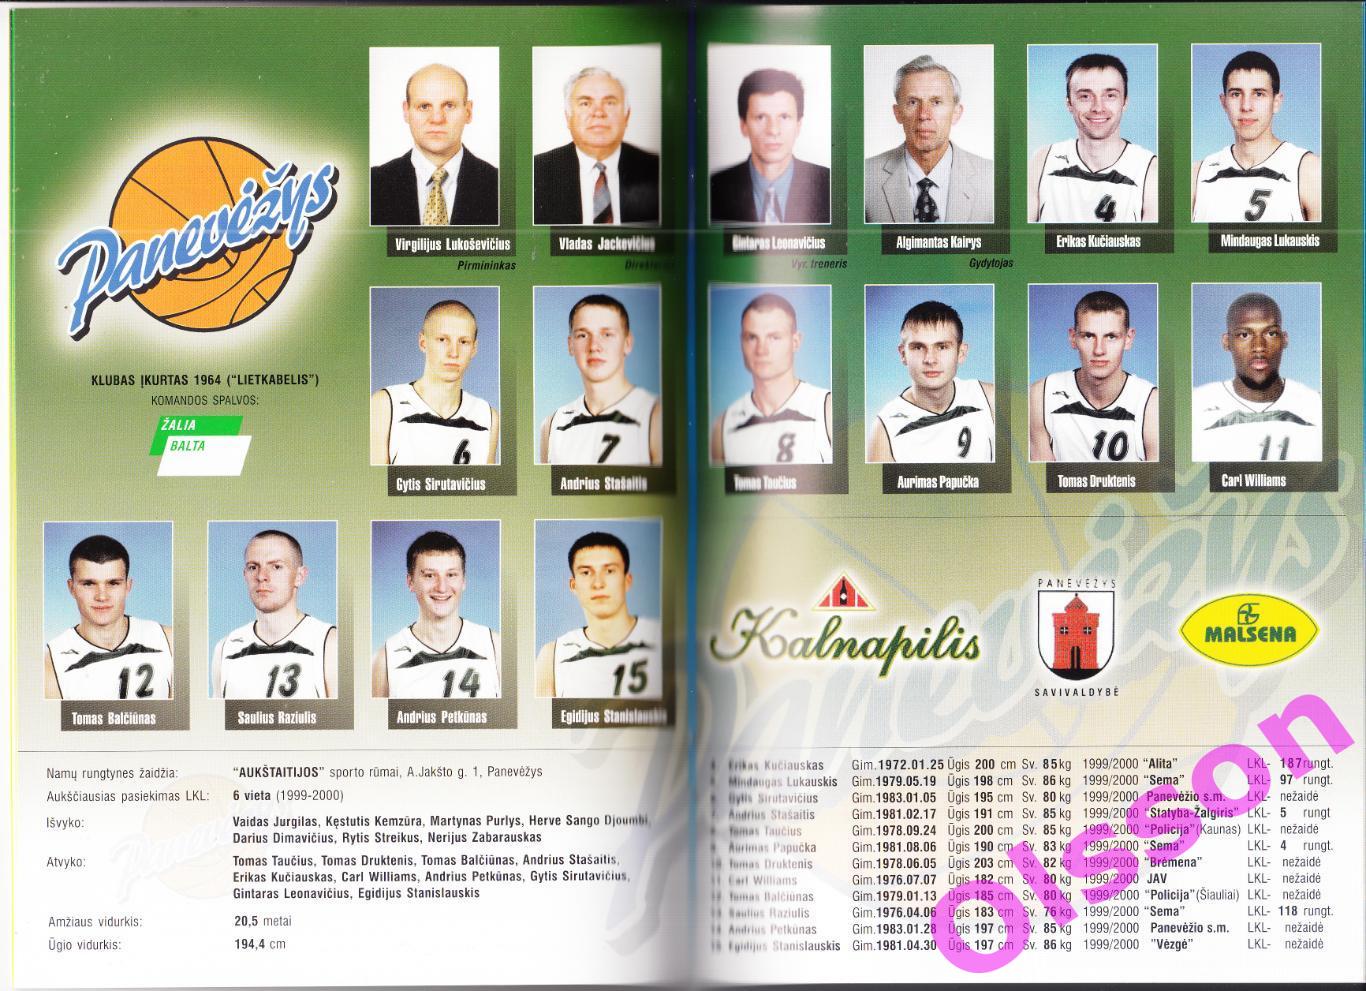 Баскетбол. Справочник Литва - 2000/2001. ( см. описание)* 1